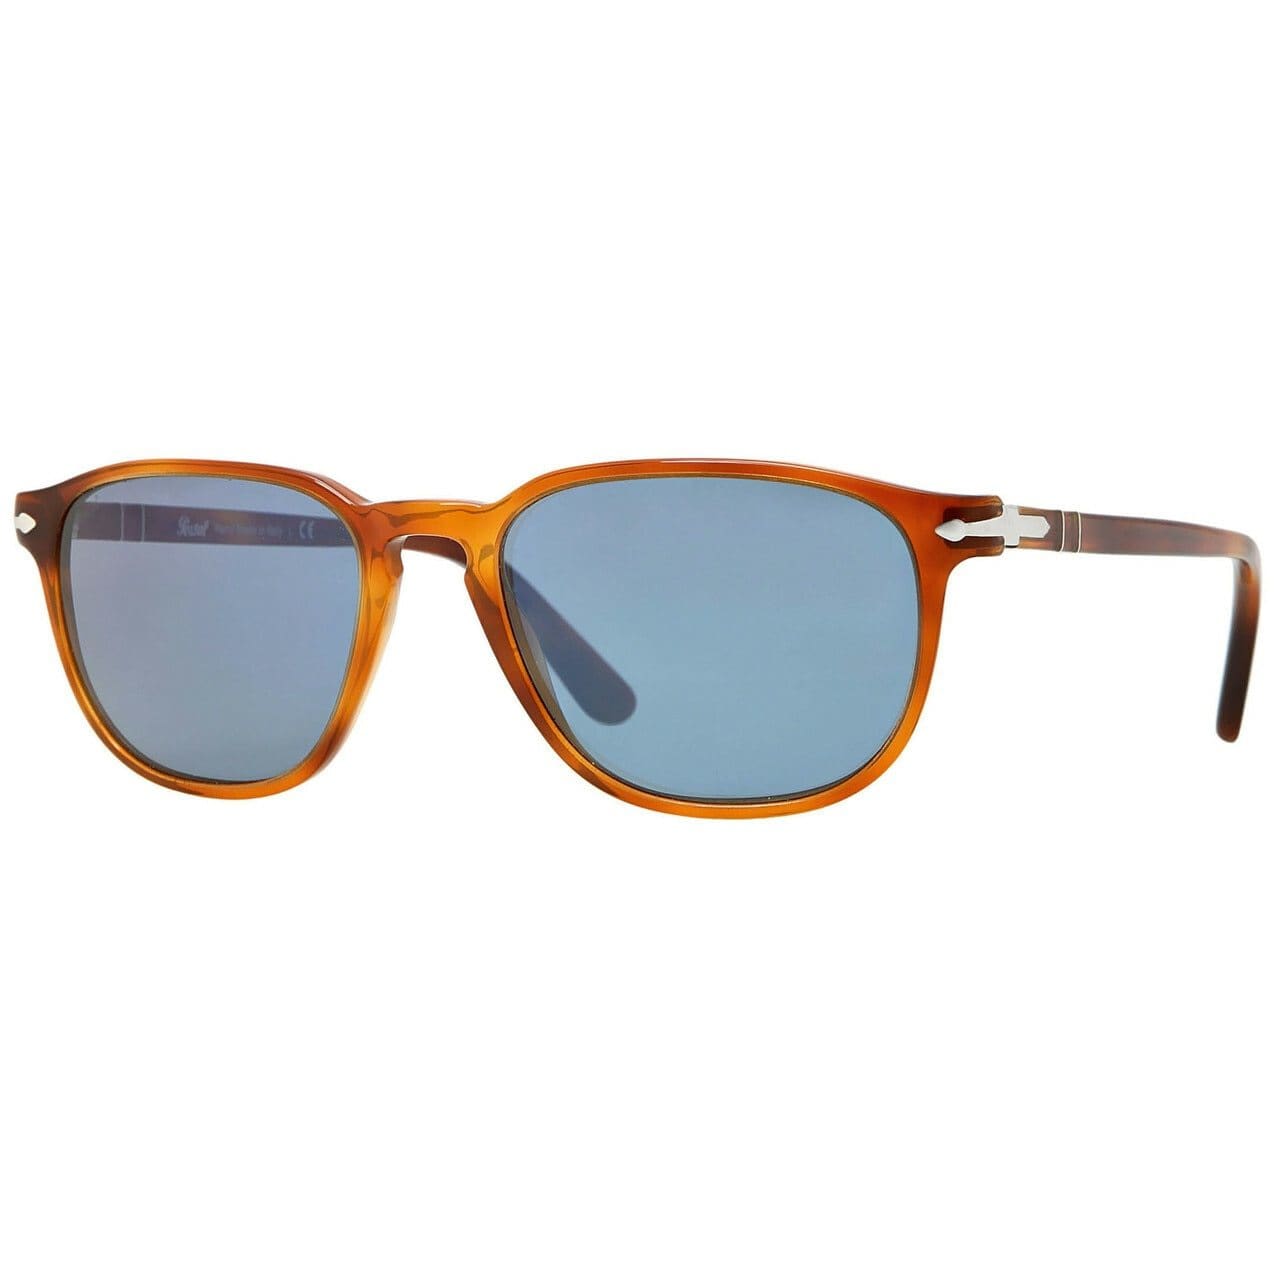 Persol 3019S Full Rim Acetate Unisex Folding Sunglasses